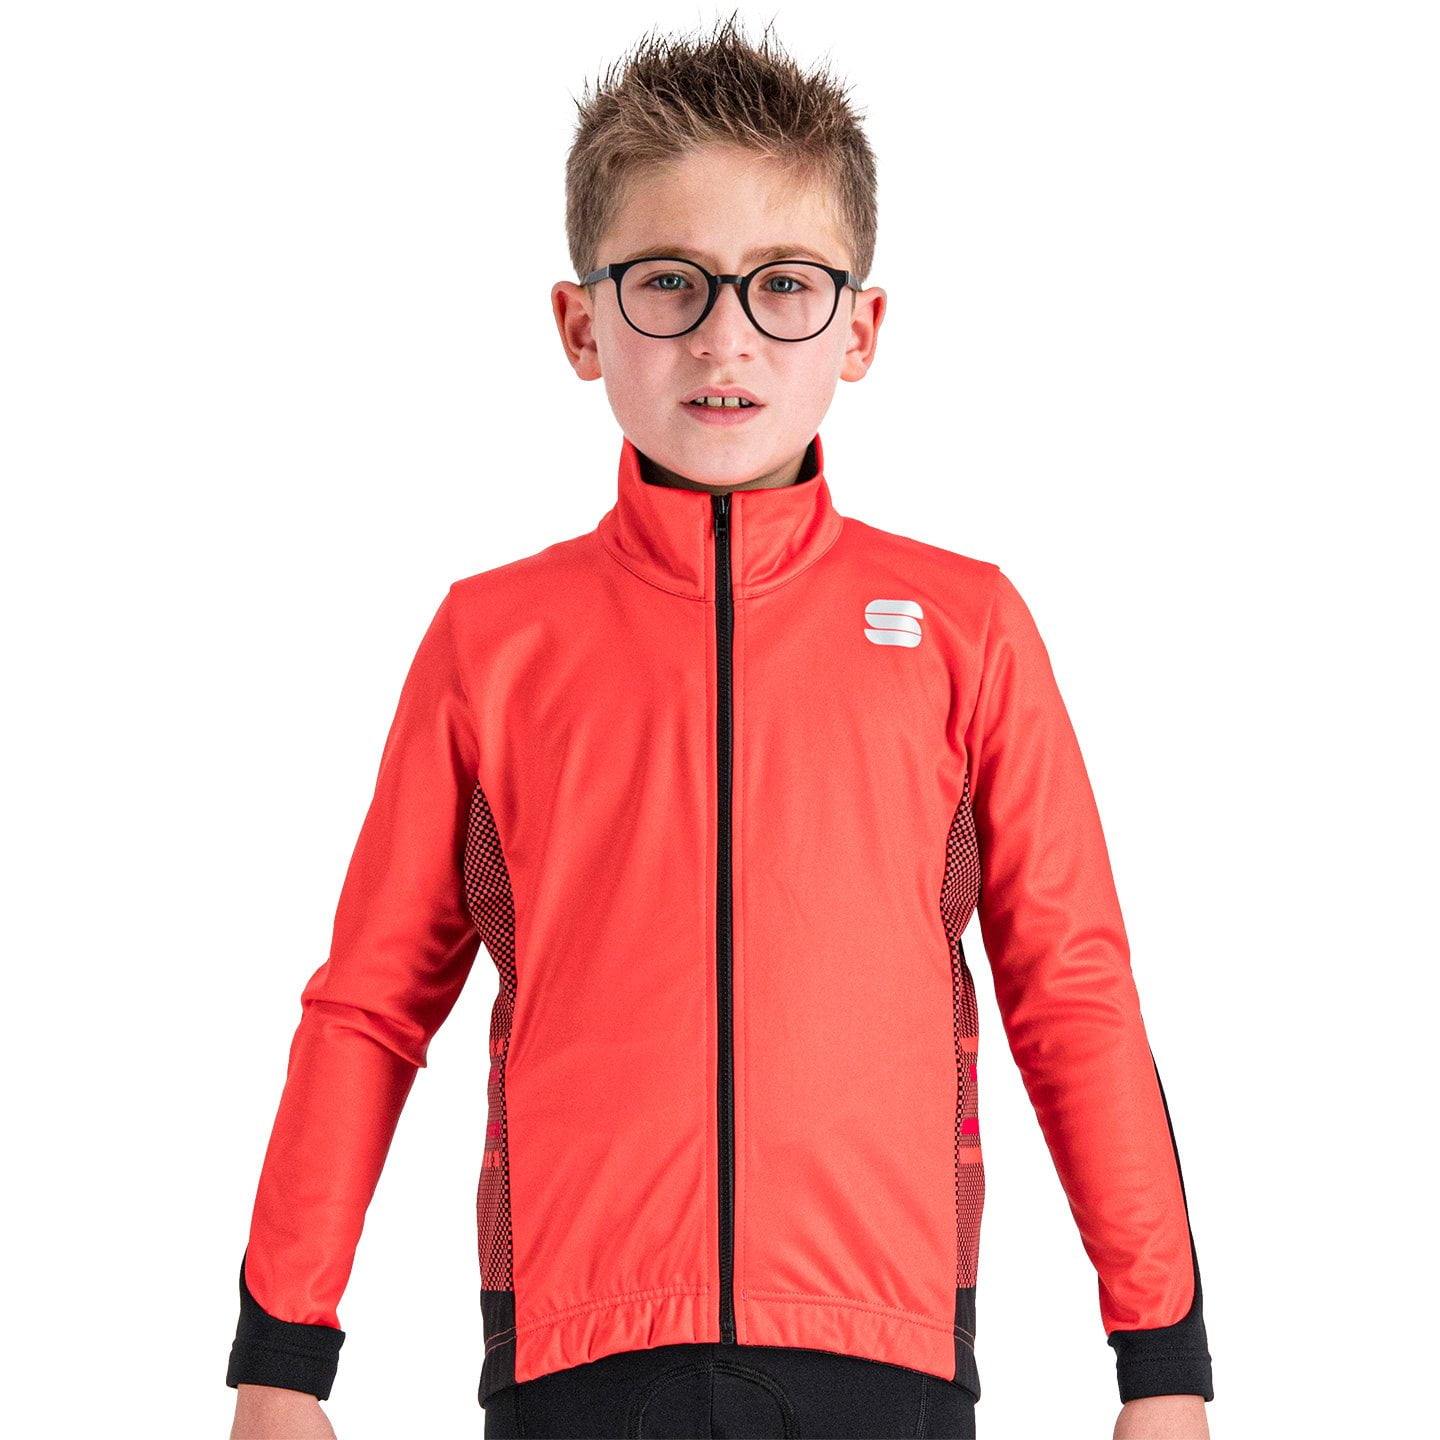 SPORTFUL Team Junior Kids Winter Jacket Thermal Jacket, size M, Kids cycling jacket, Kids cycling clothing